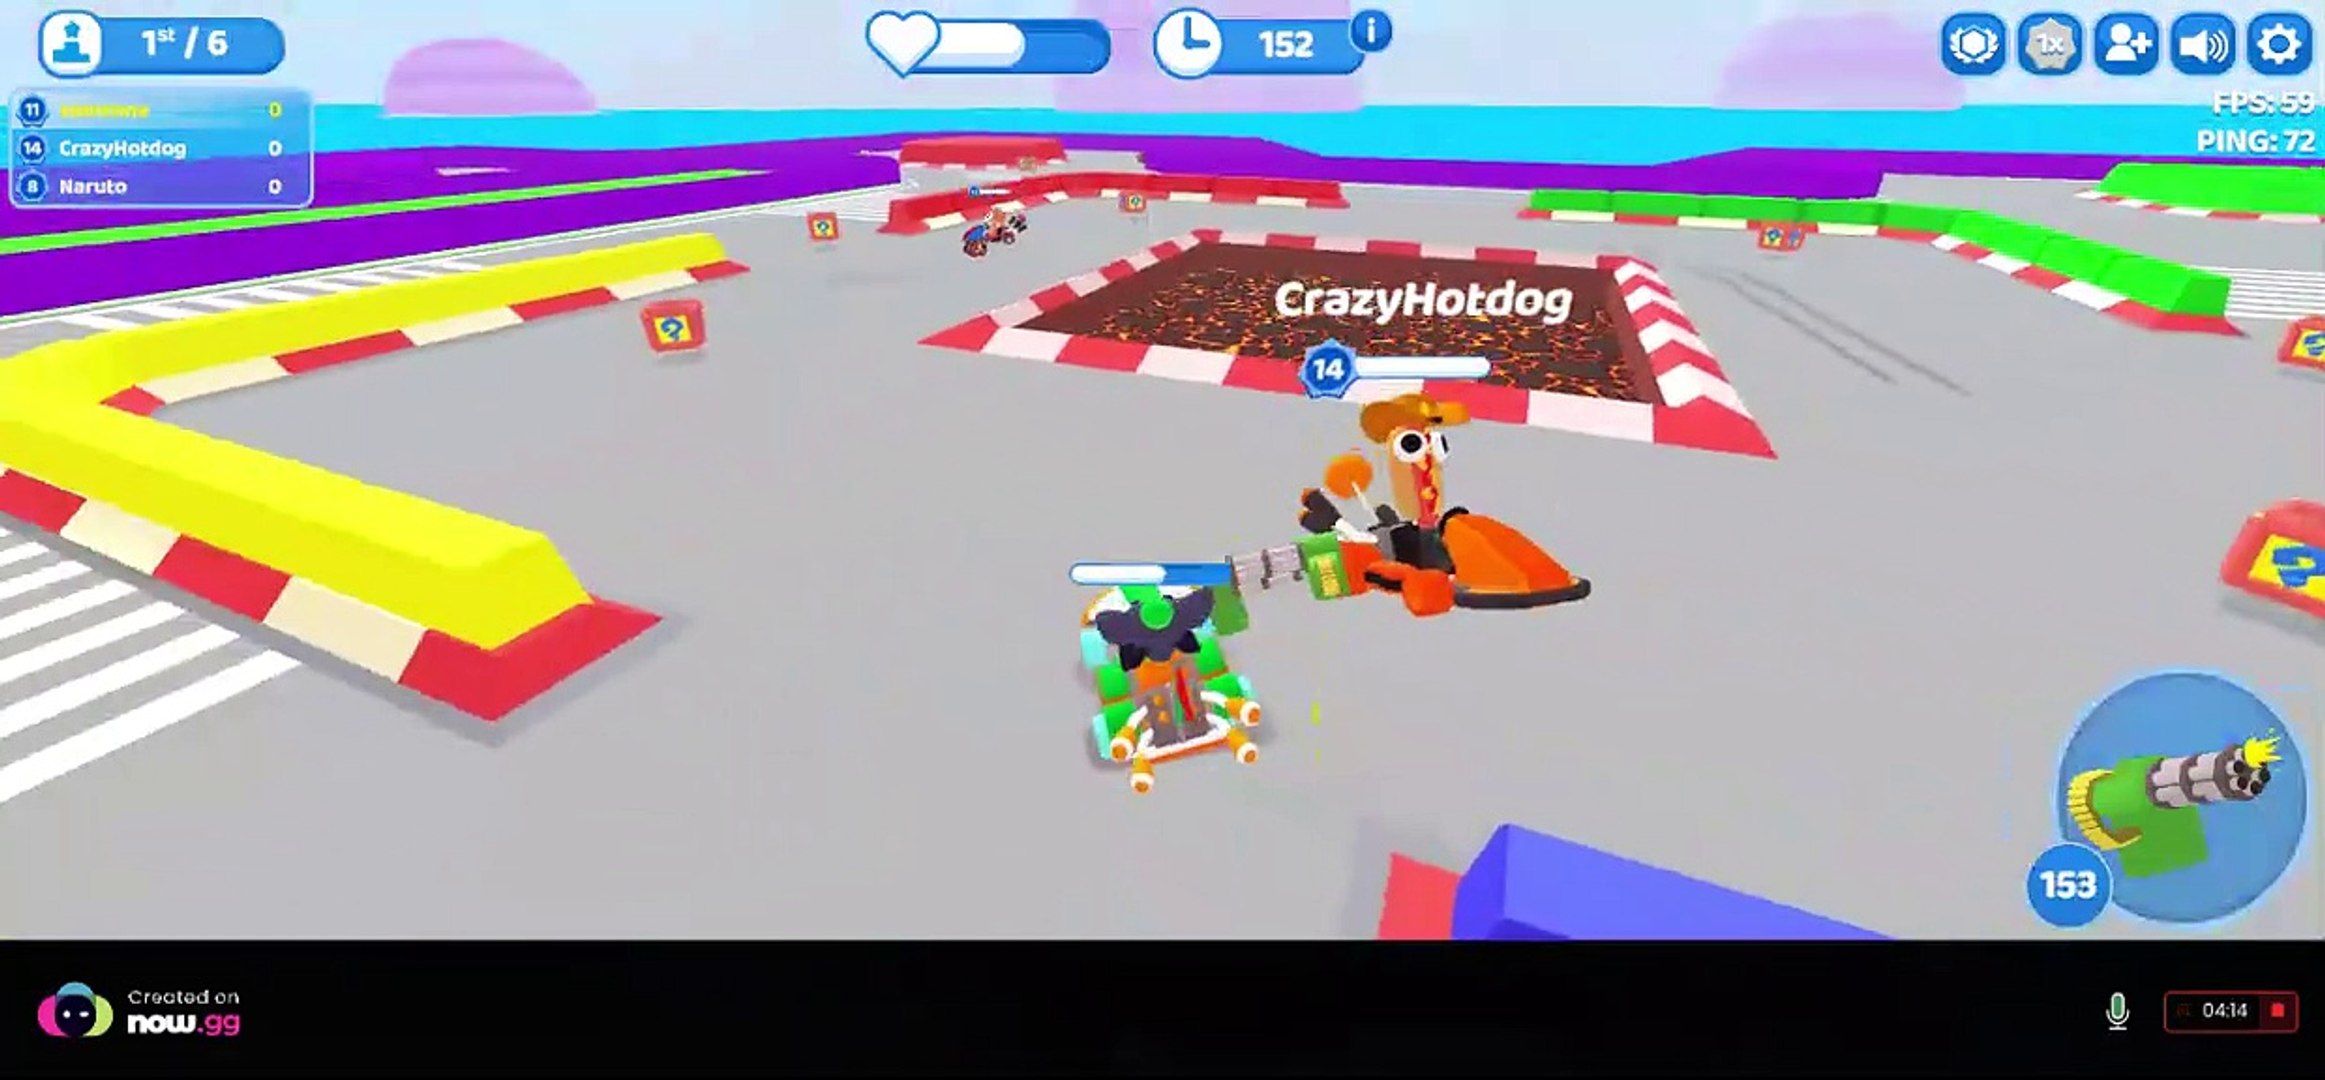 Smash Karts - Play On VitalityGames